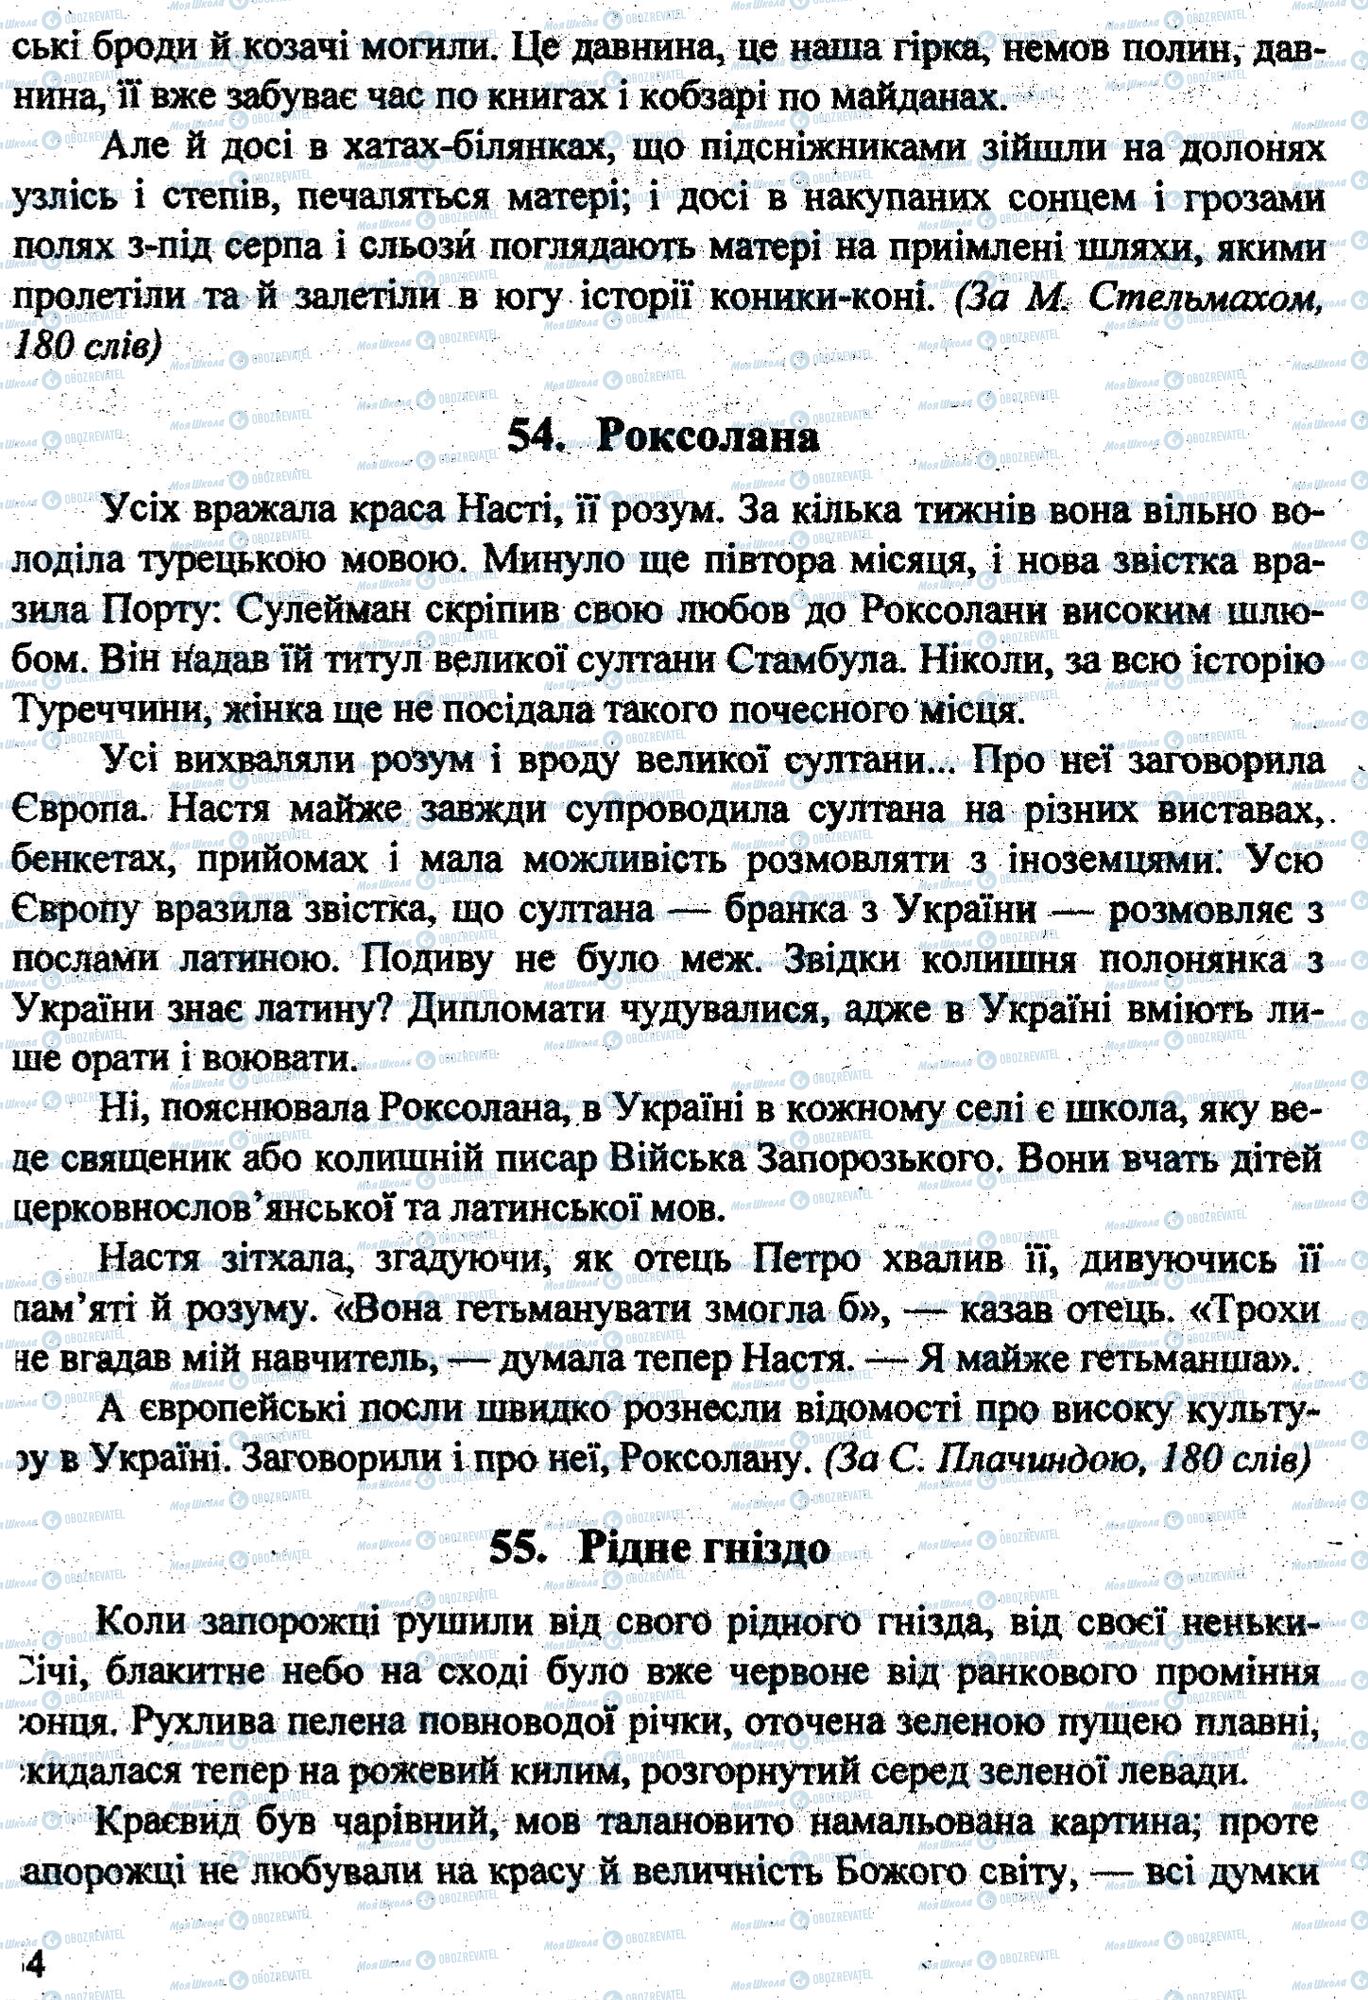 ДПА Укр мова 9 класс страница 0033